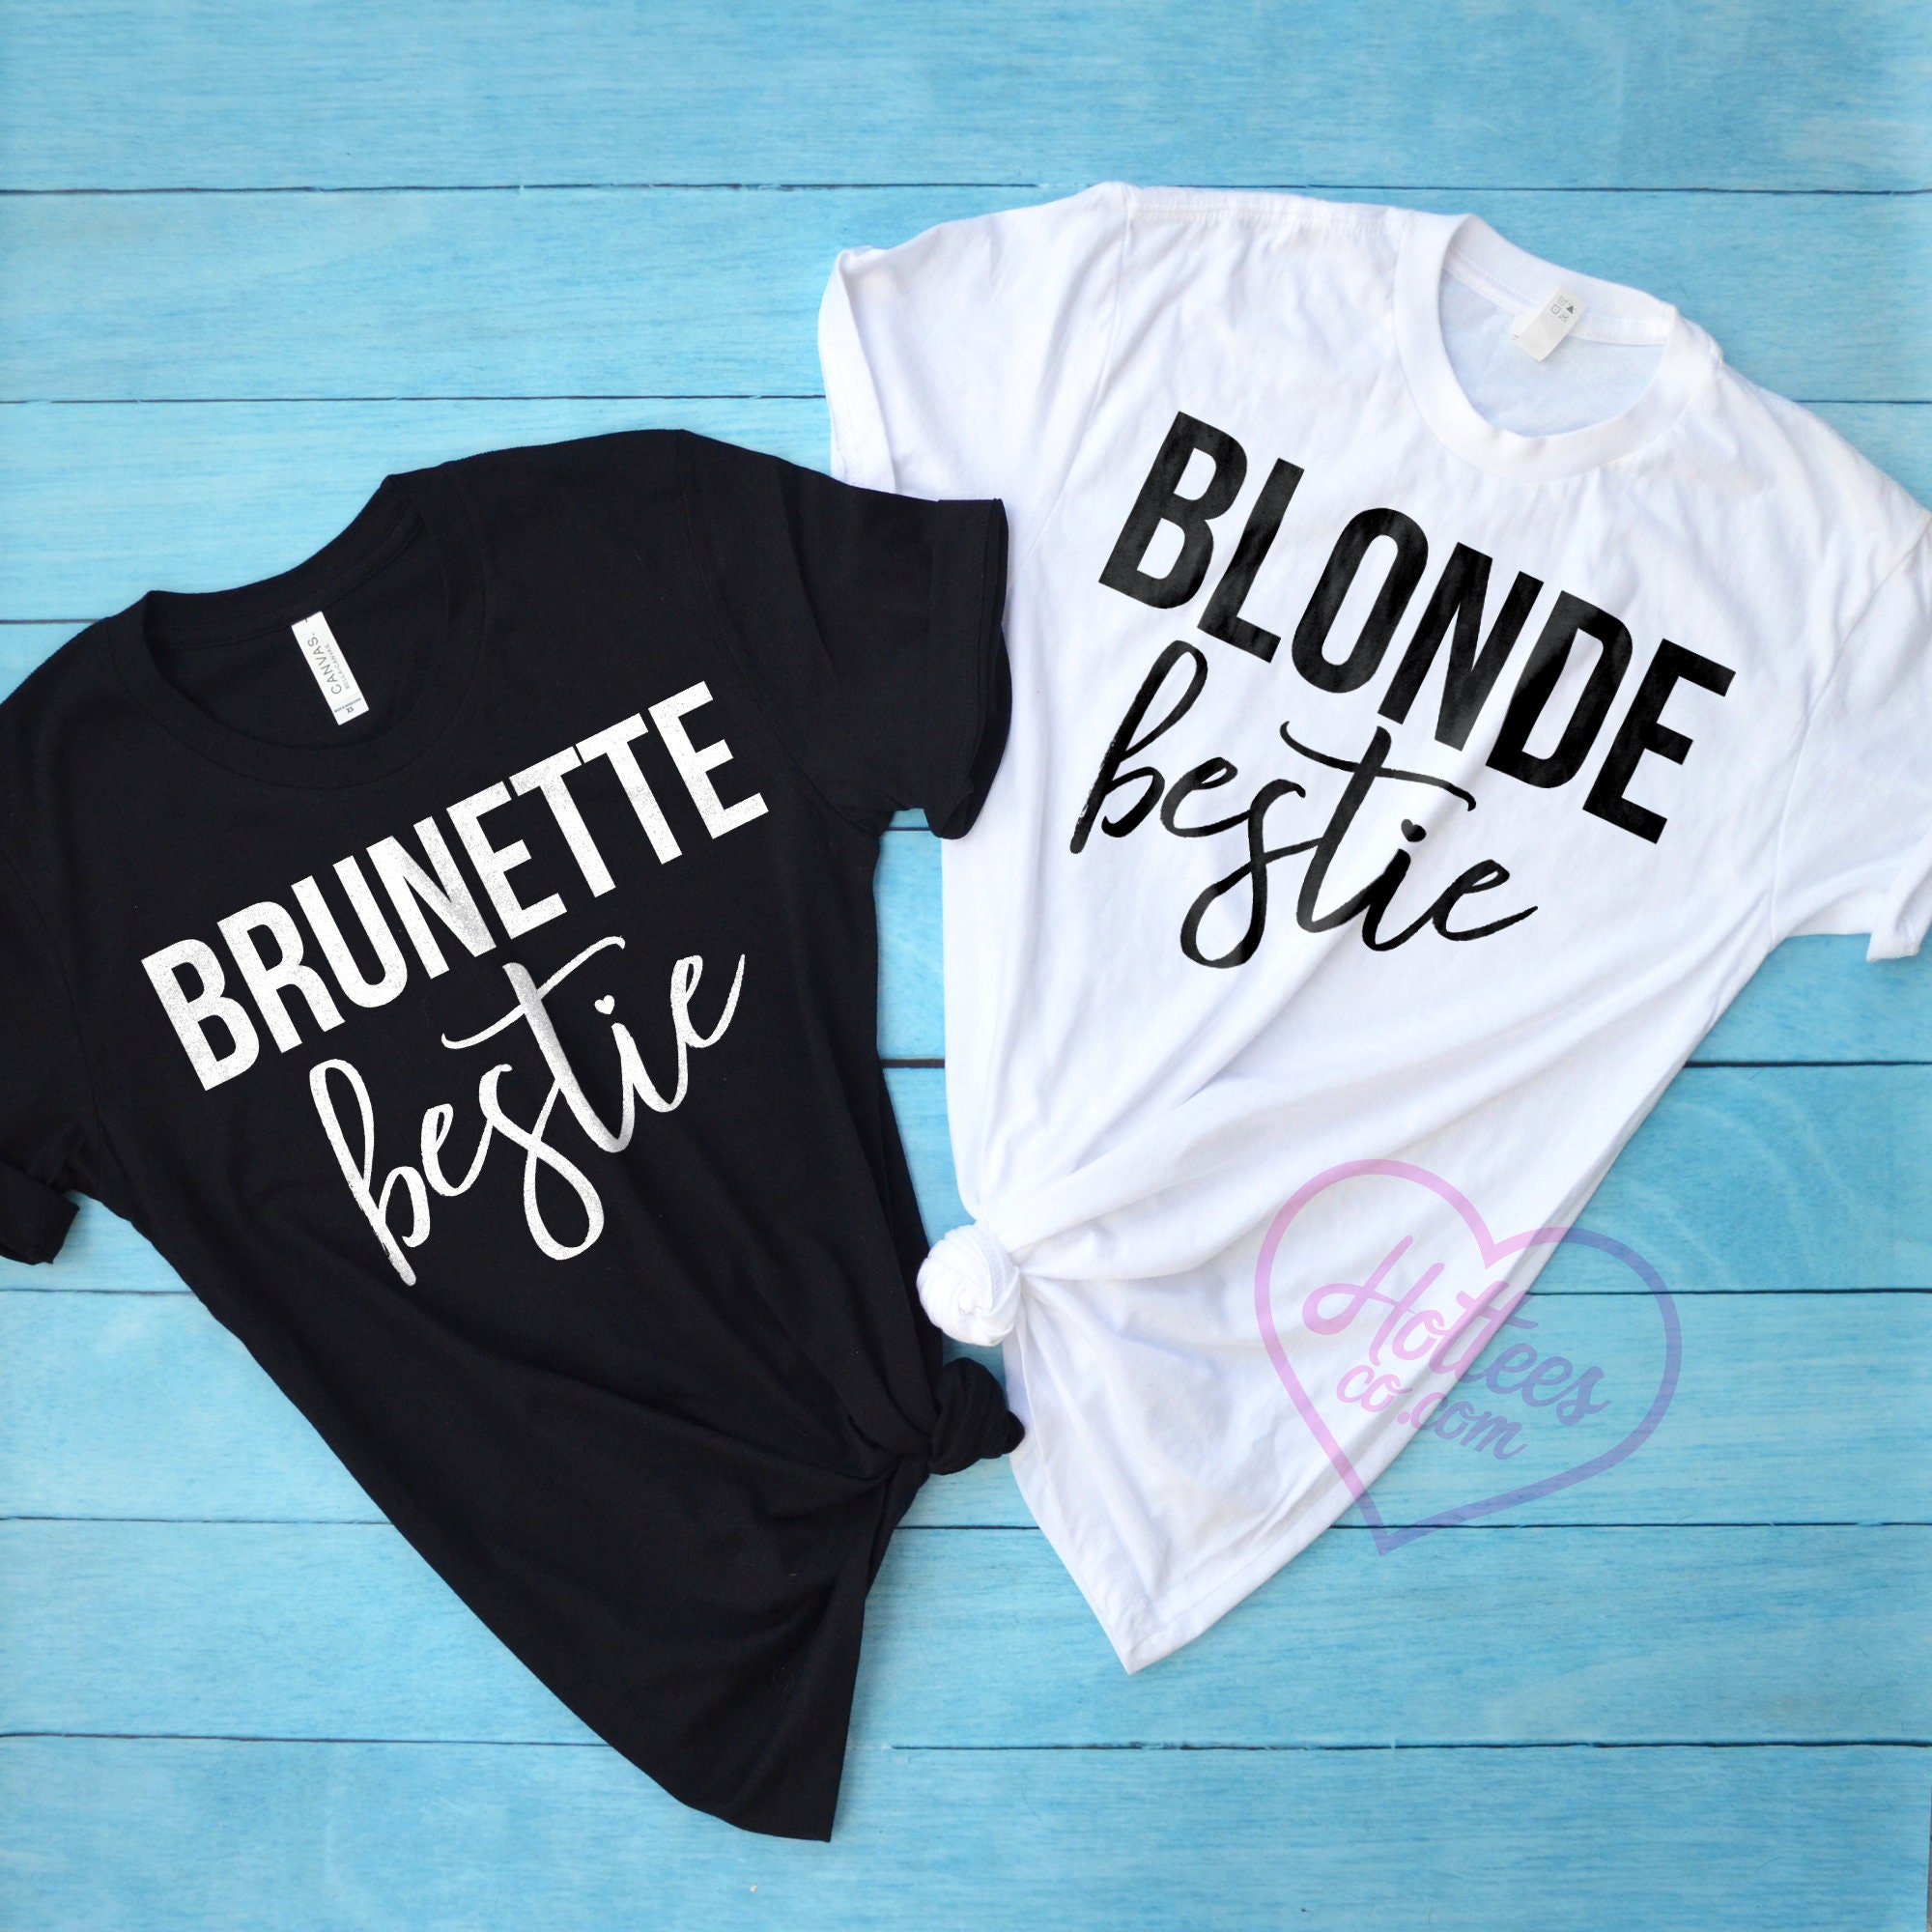 Blonde Bestie En Brunette Bestie Bijpassende Shirts Beste Etsy